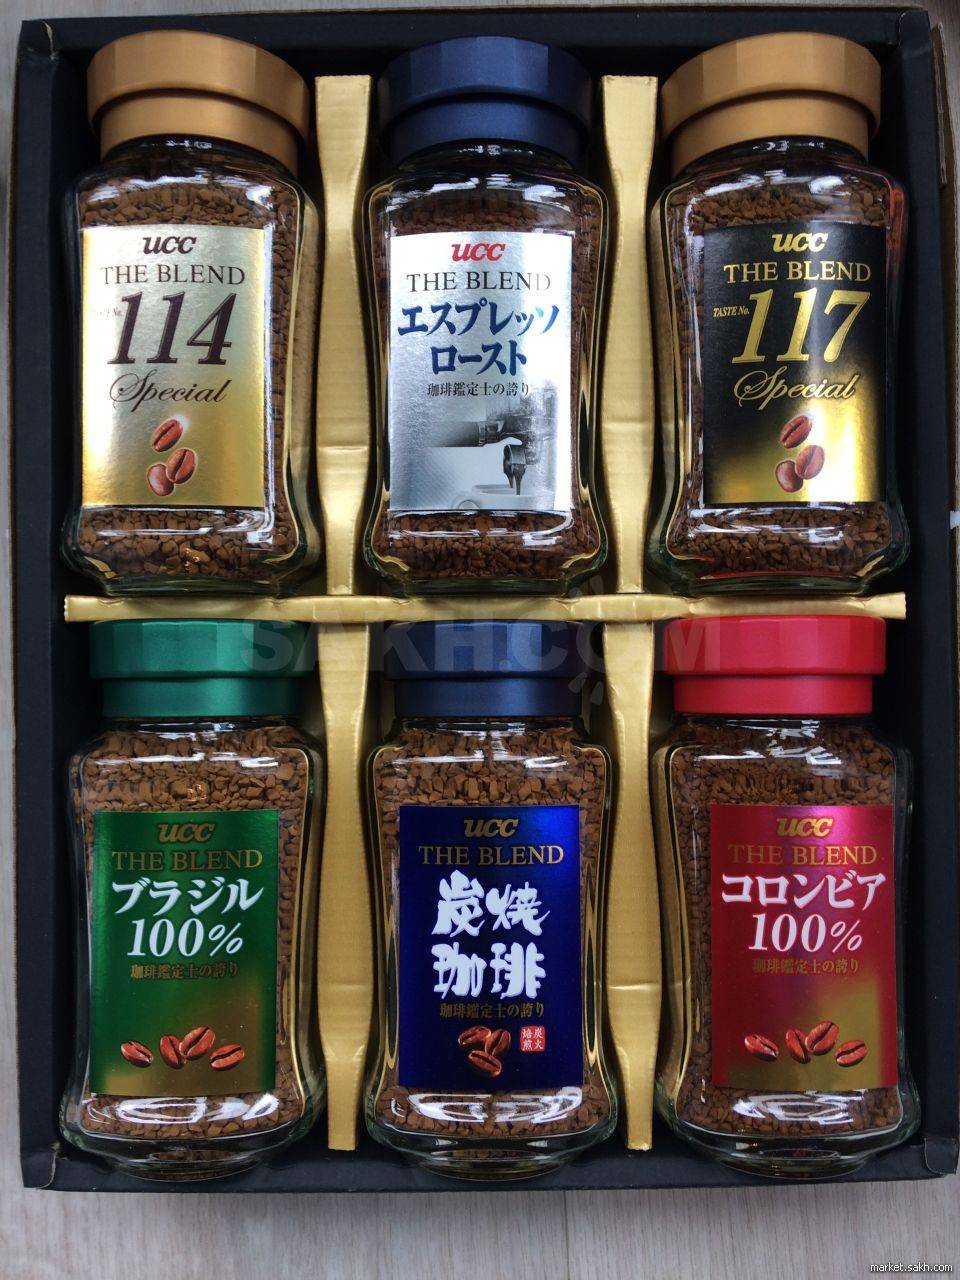 Виды и описание продукции кофе от японского бренда бушидо: история марки, сырье и производство продукции, линейка товара, отзывы, подделка